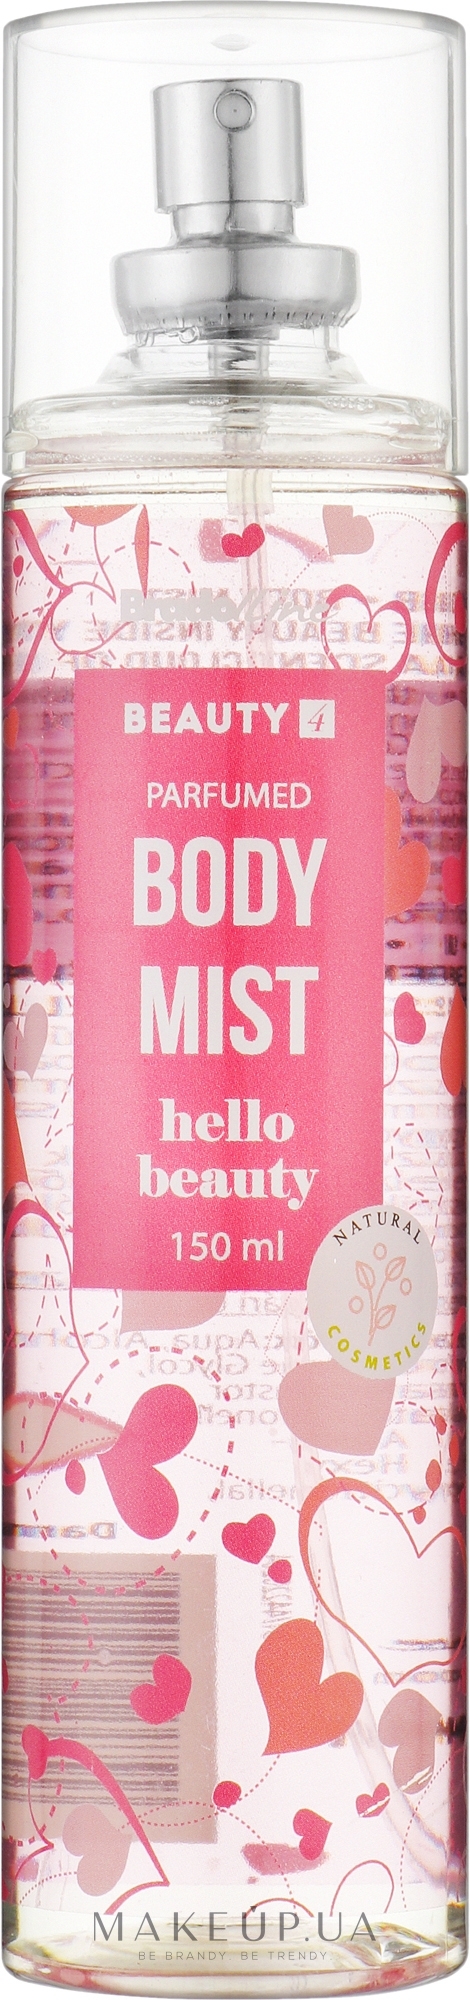 Міст для тіла "Hello Beauty" - Bradoline Beauty 4 Body Mist — фото 150ml